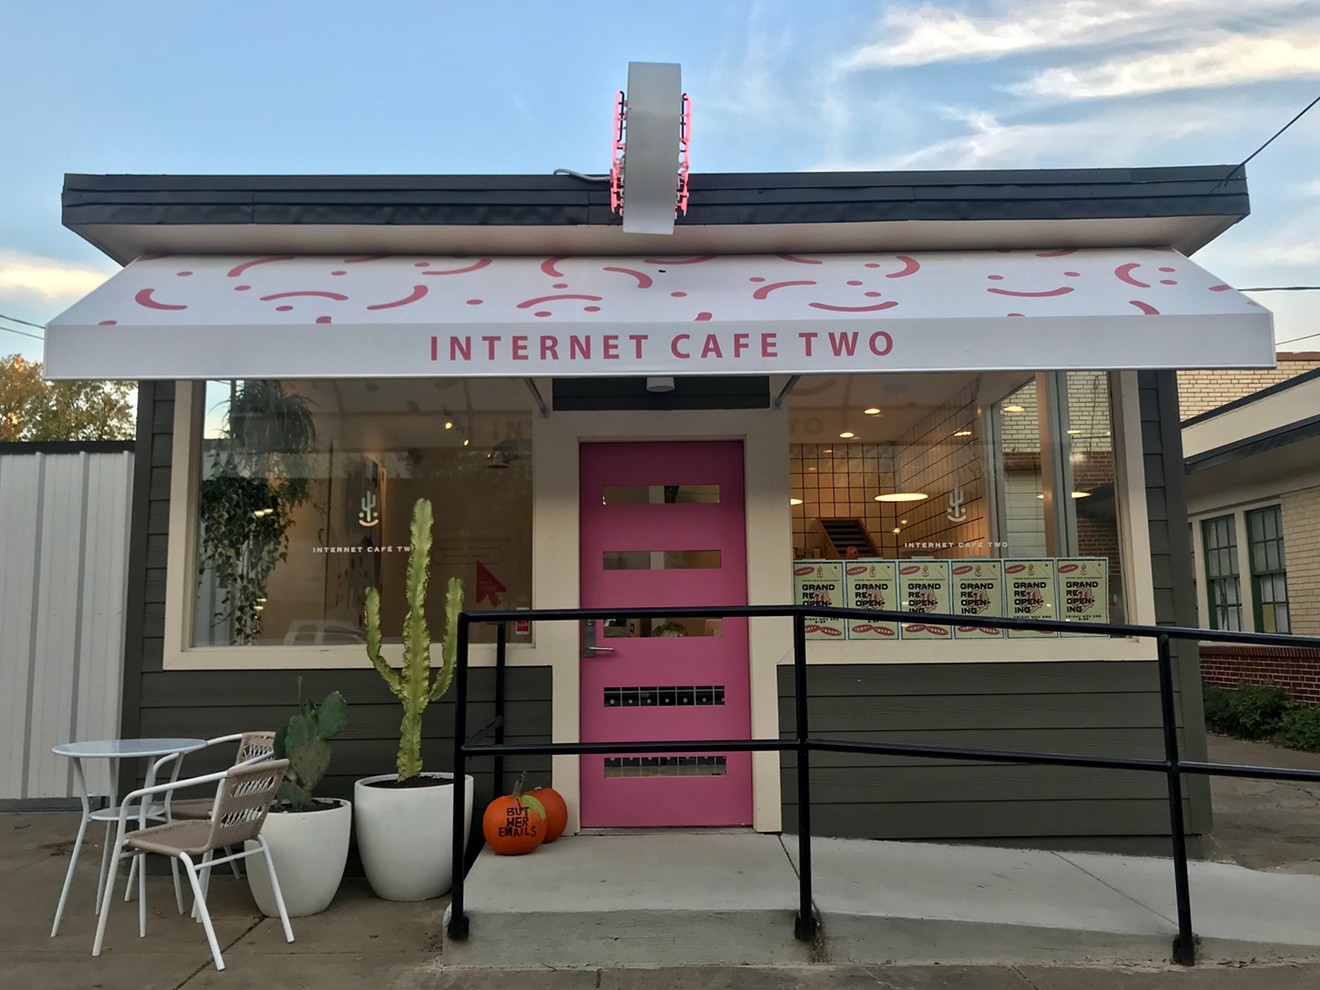 Internet Cafe 2 opened last week on Plowman Avenue in Oak Cliff.